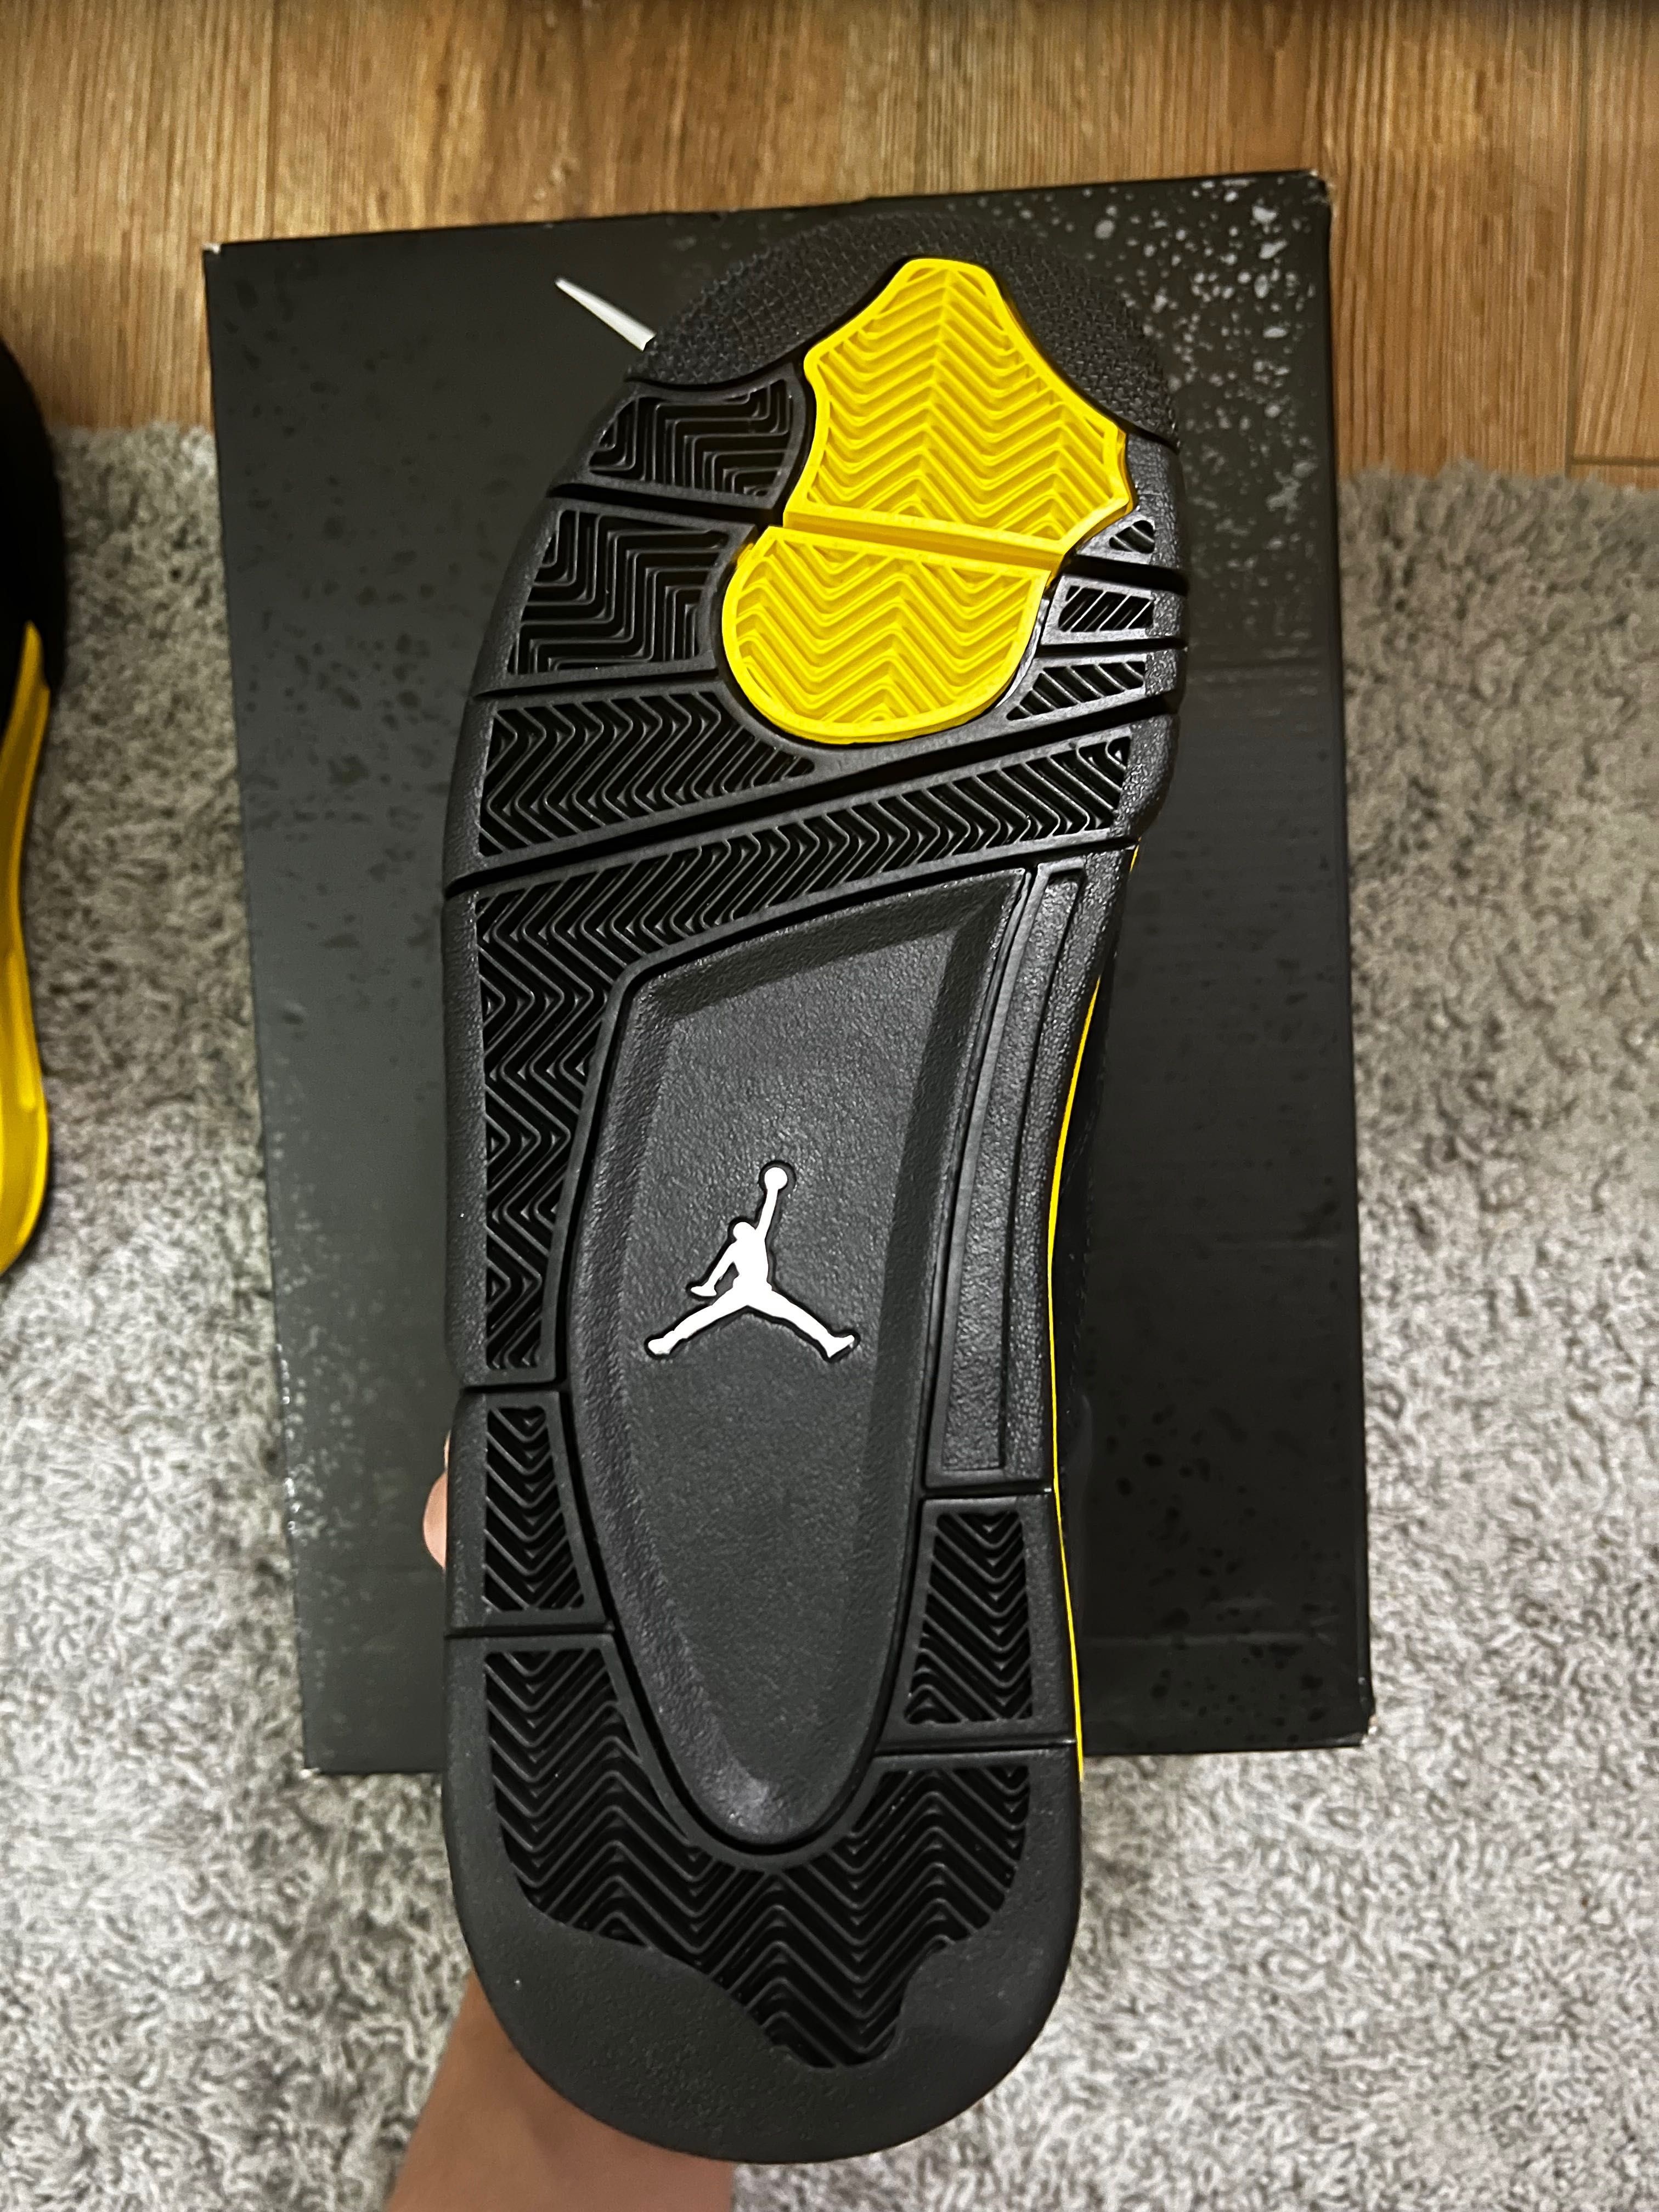 Vând Jordan 4 Retro"Thunder"noi în cutie.Preț:1350 lei